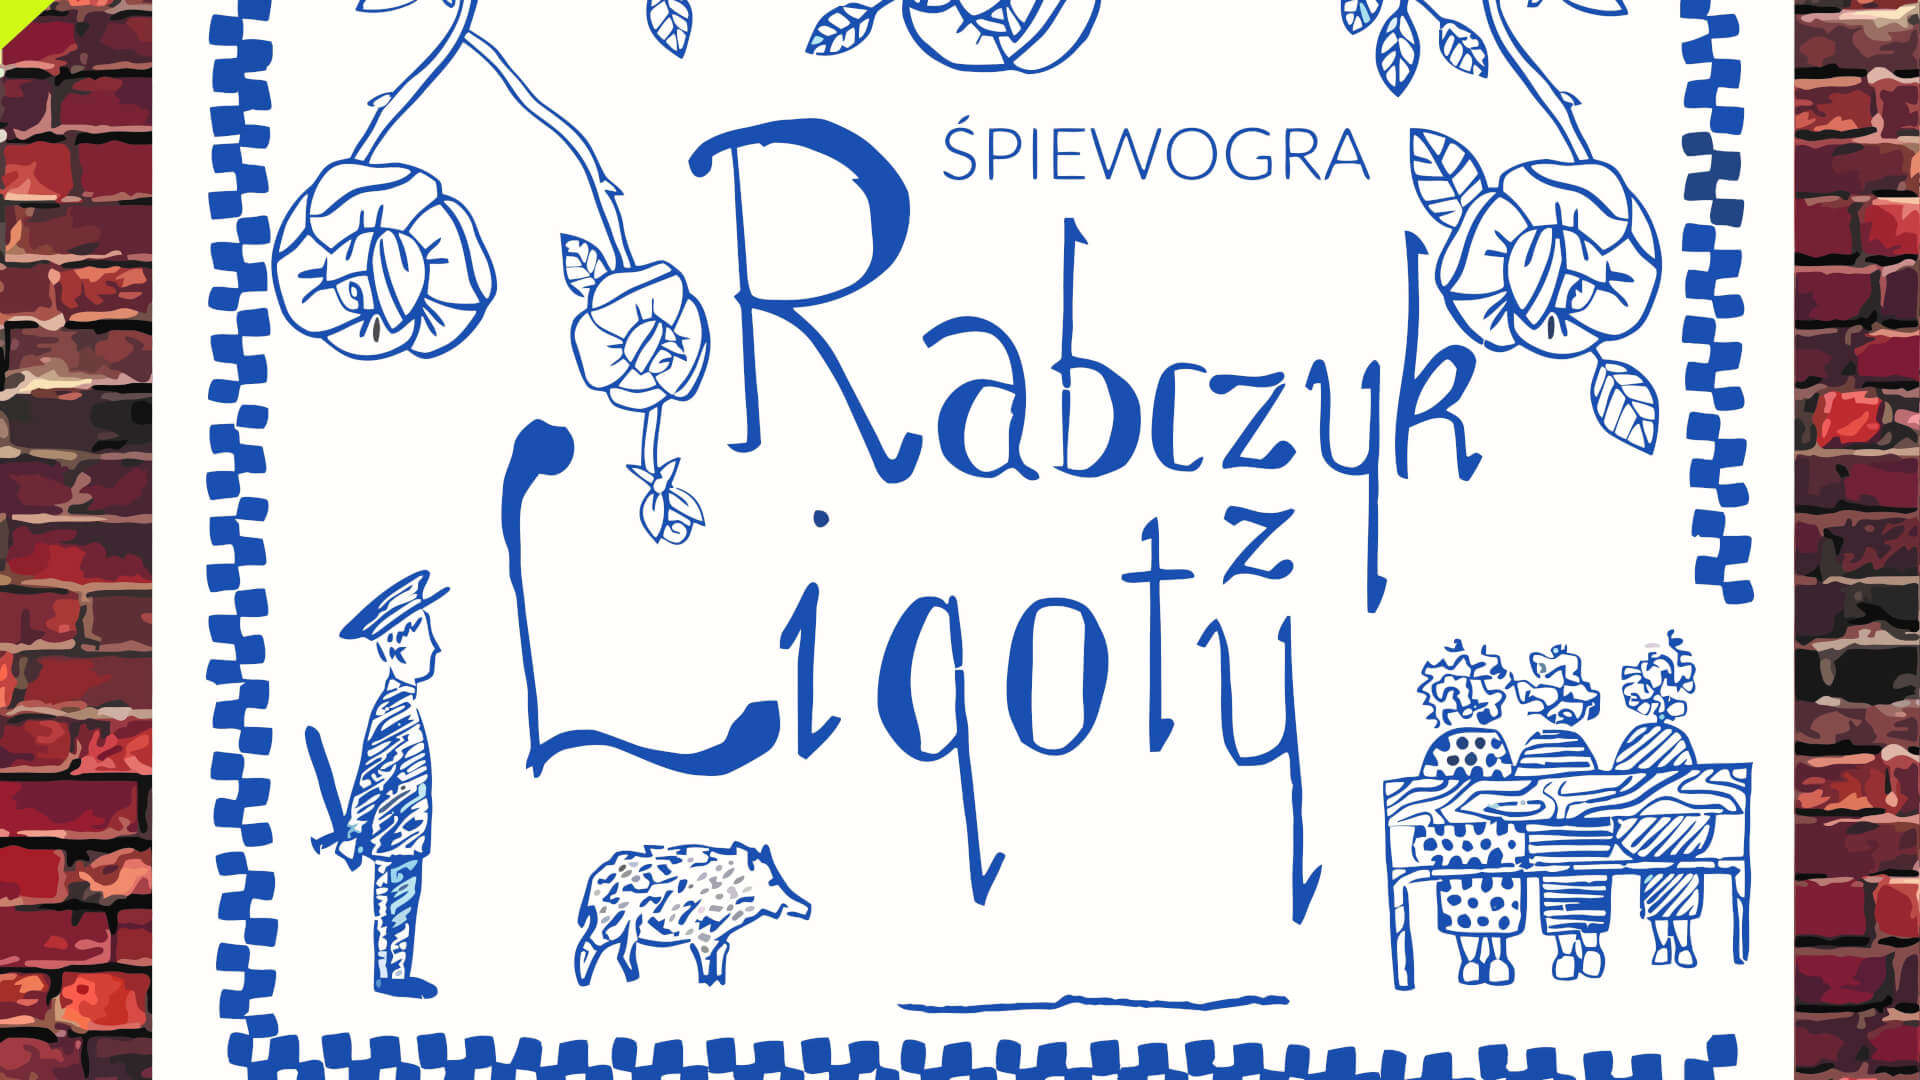 Plakat spektaklu "Rabczyk z Ligoty"